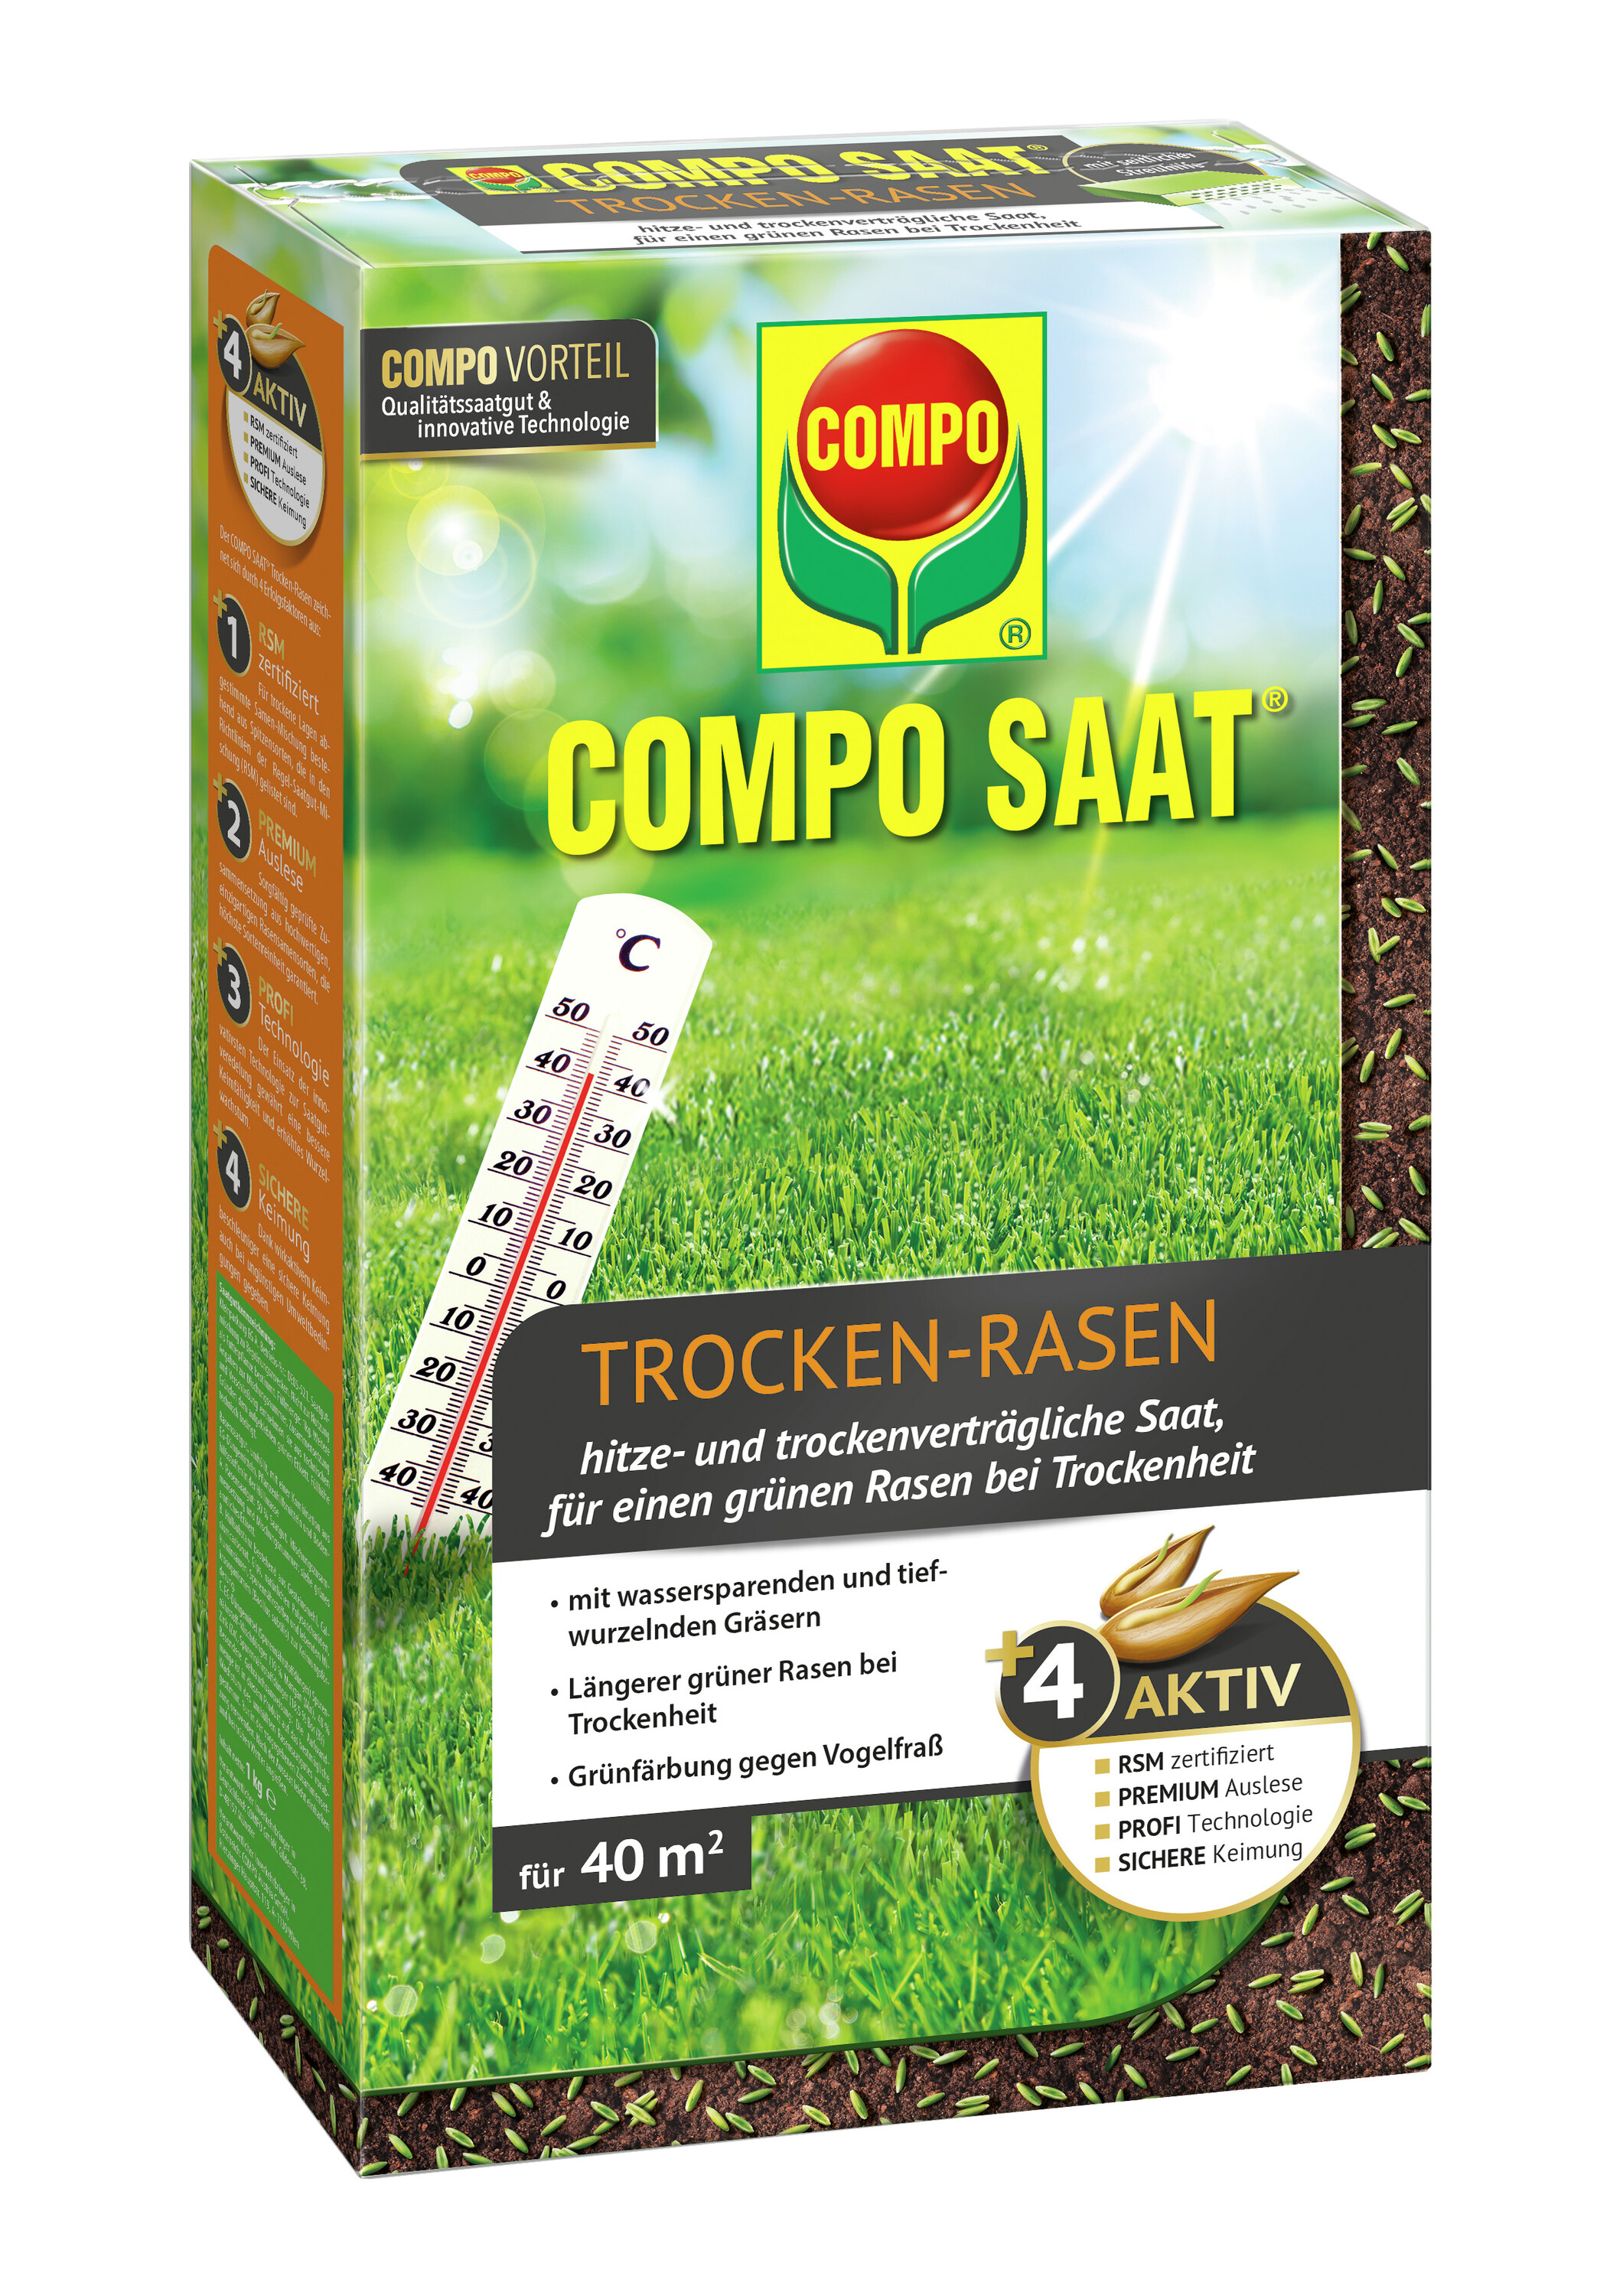  COMPO SAAT Trocken-Rasen 1kg für 40 qm